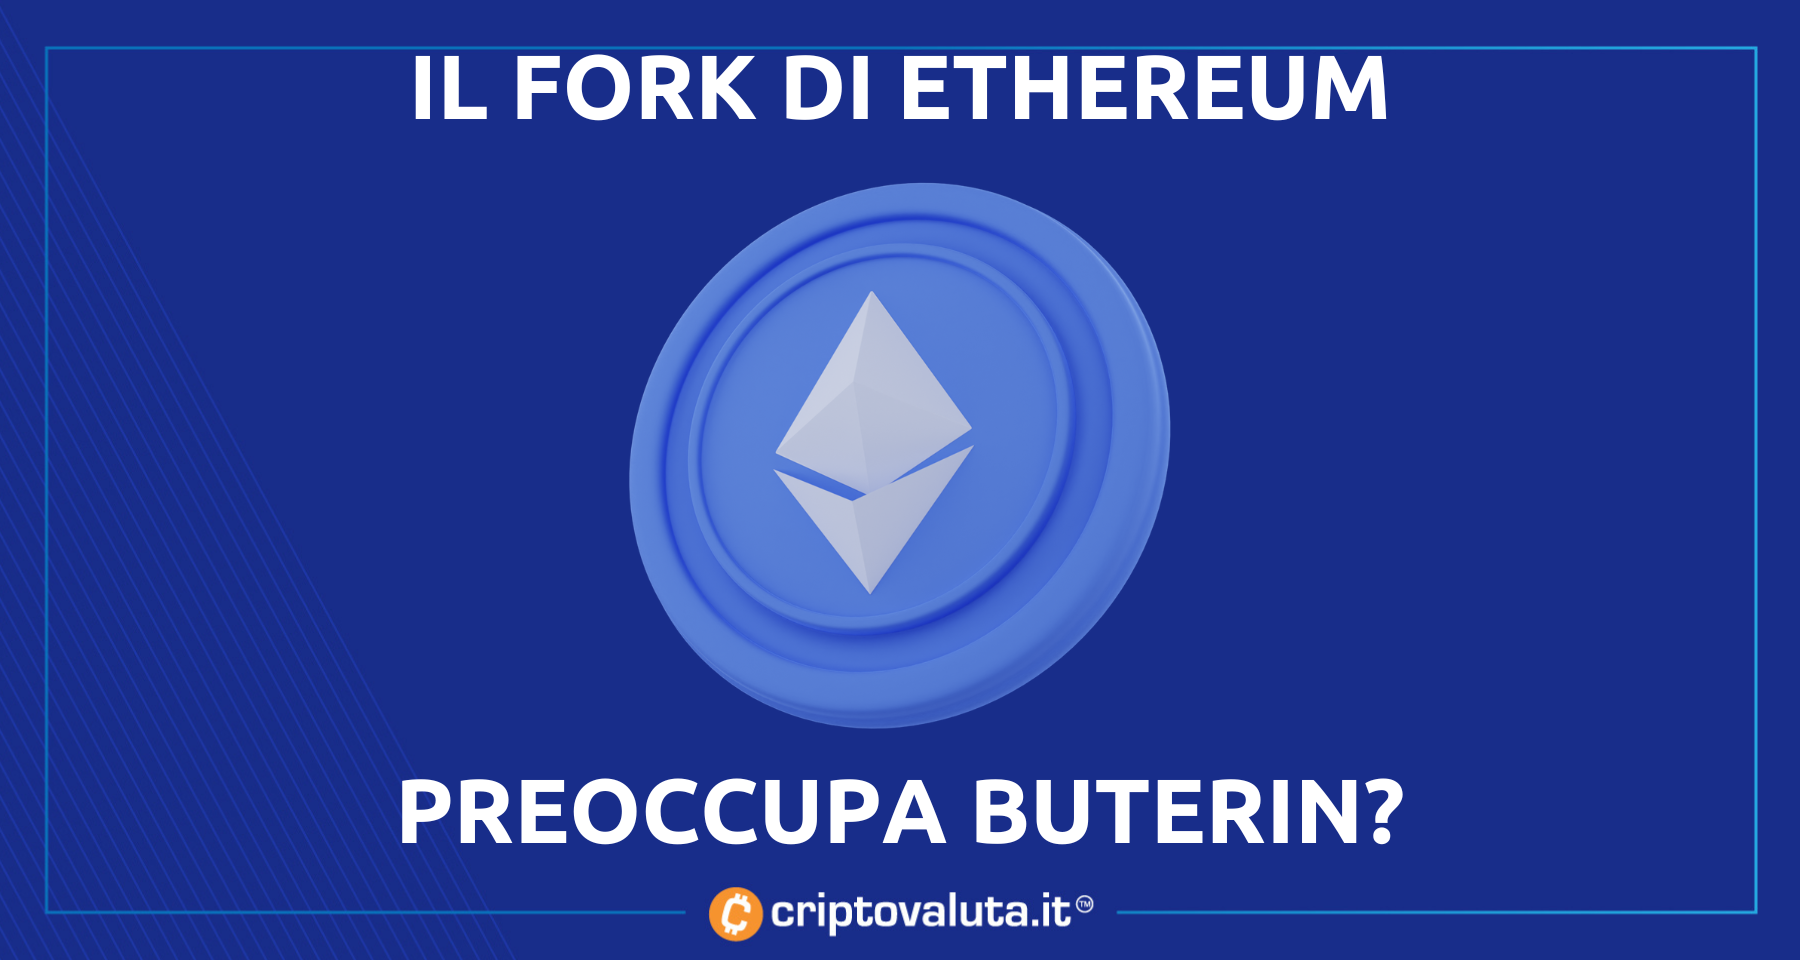 Vitalik Buterin contro il fork di Ethereum | “Cercano soldi facili”